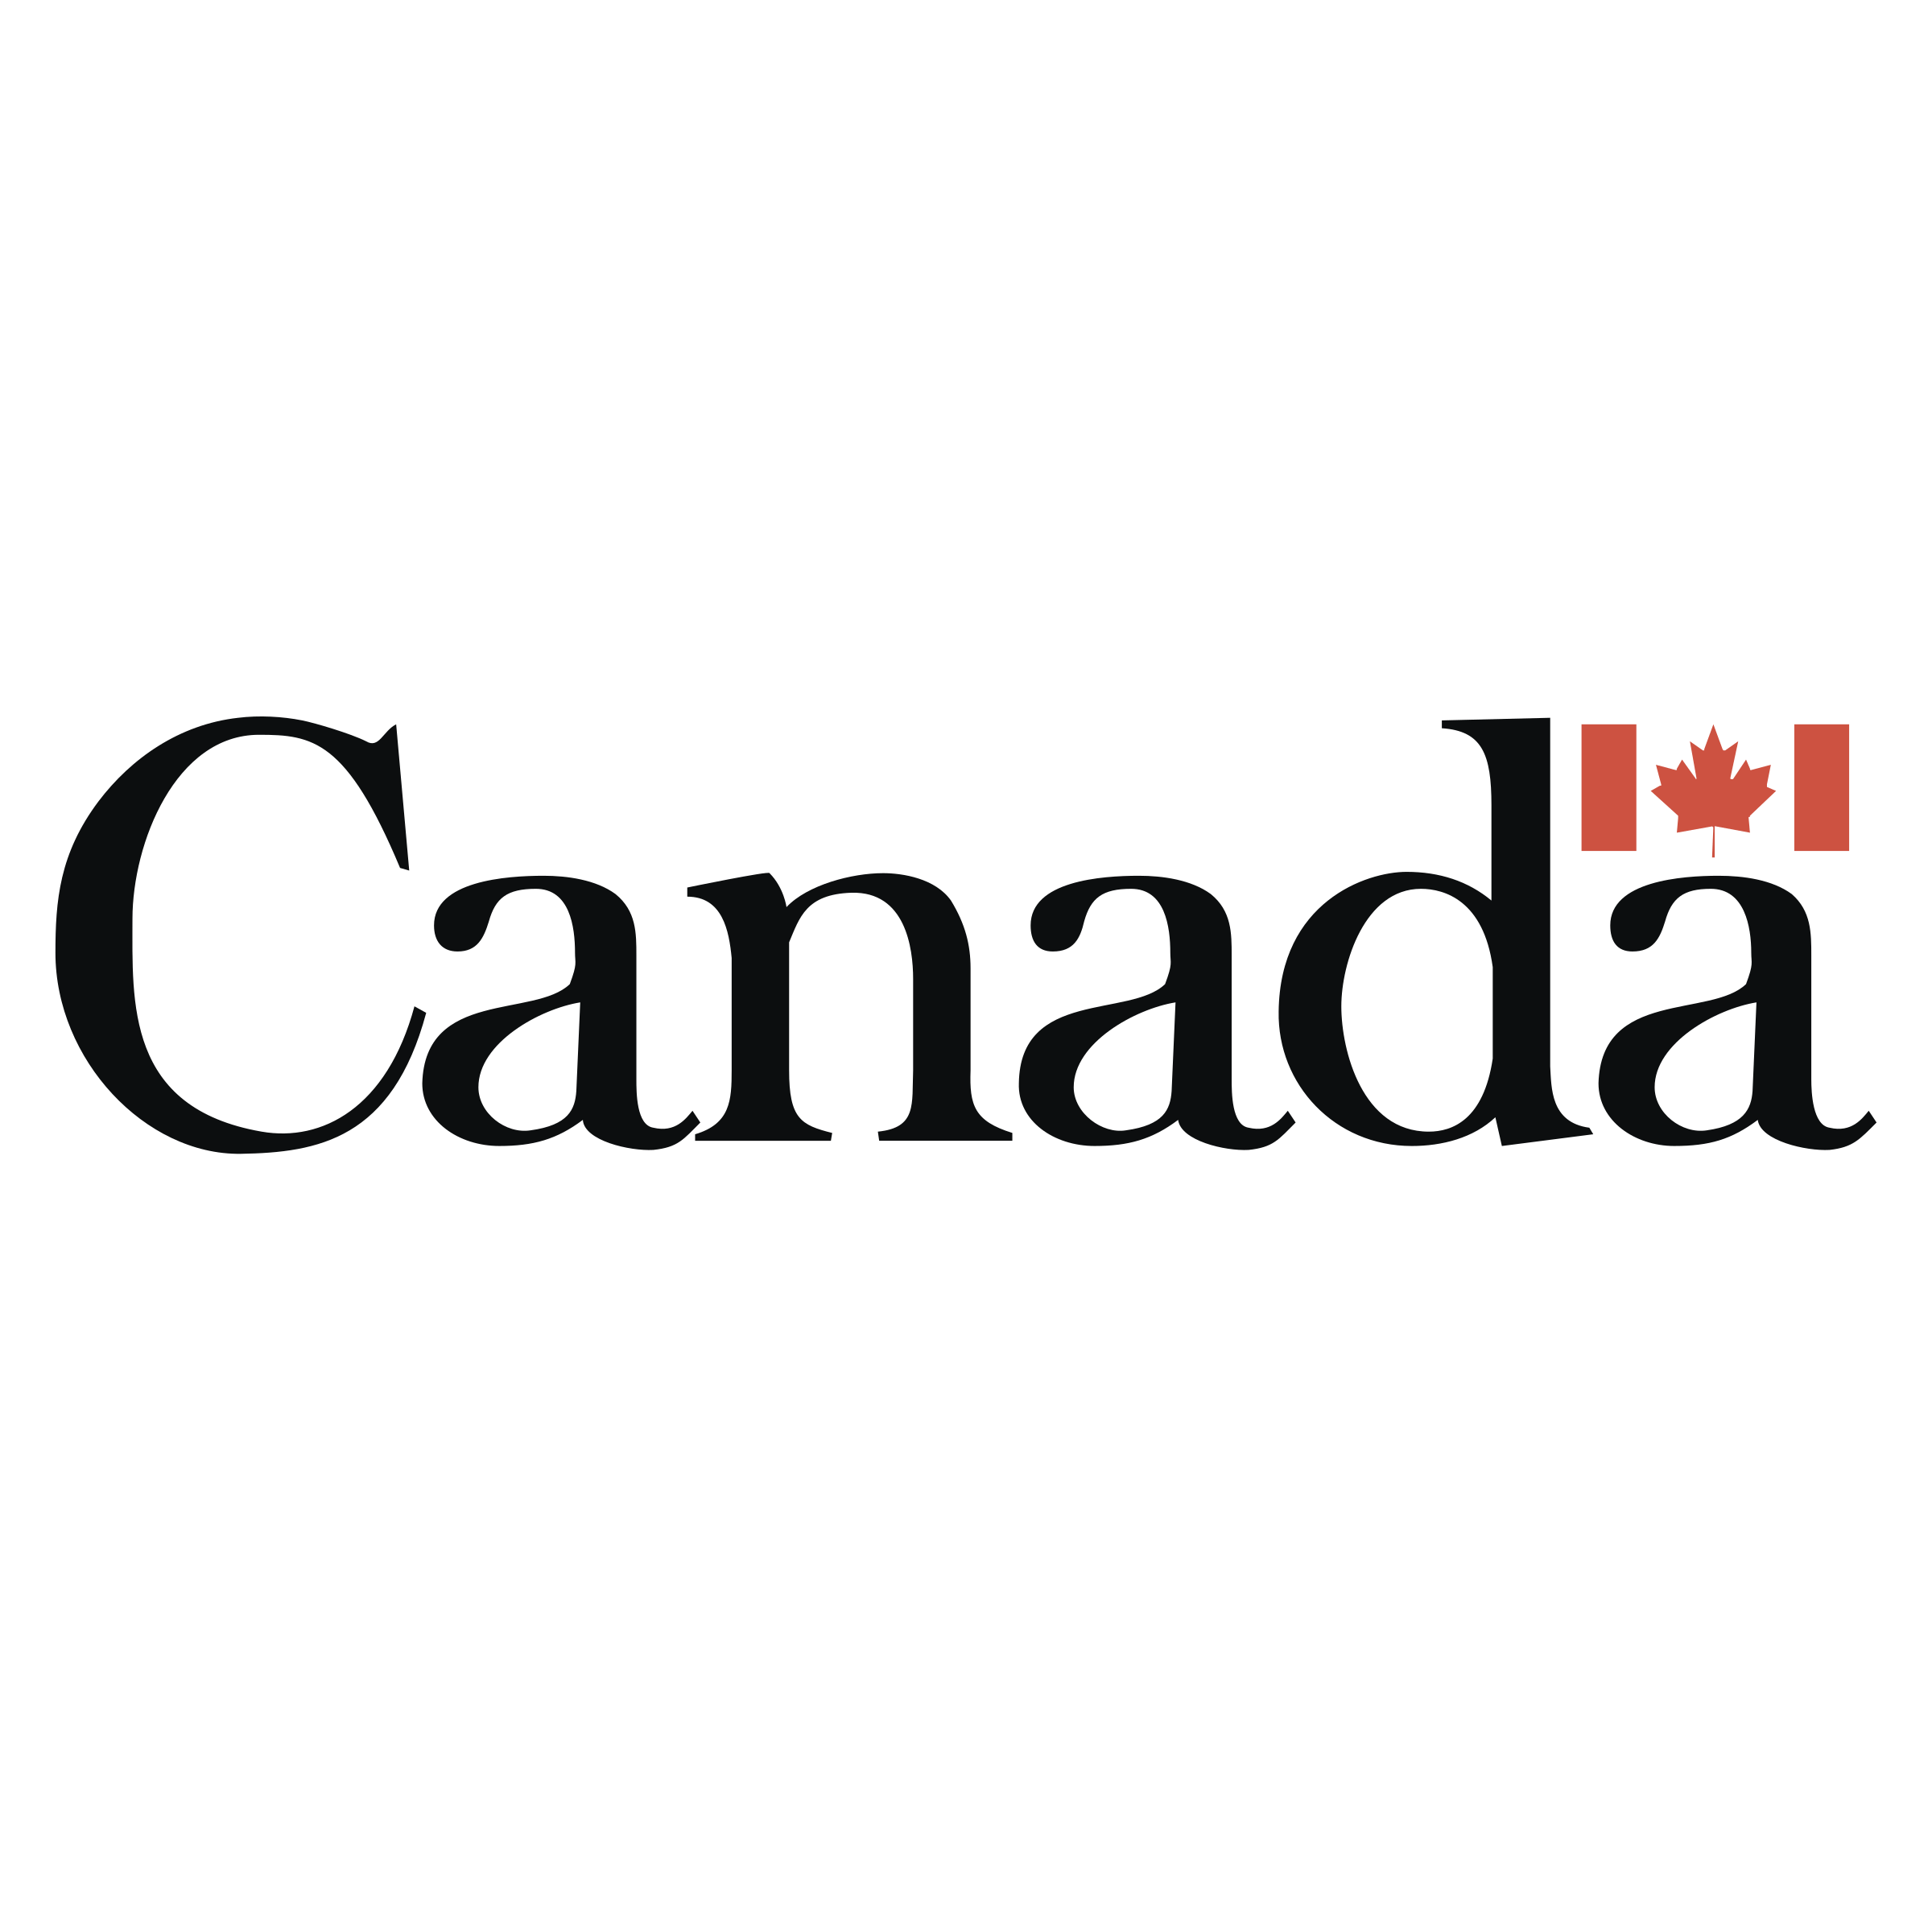 Canada White Logo - Canada Logo PNG Transparent & SVG Vector